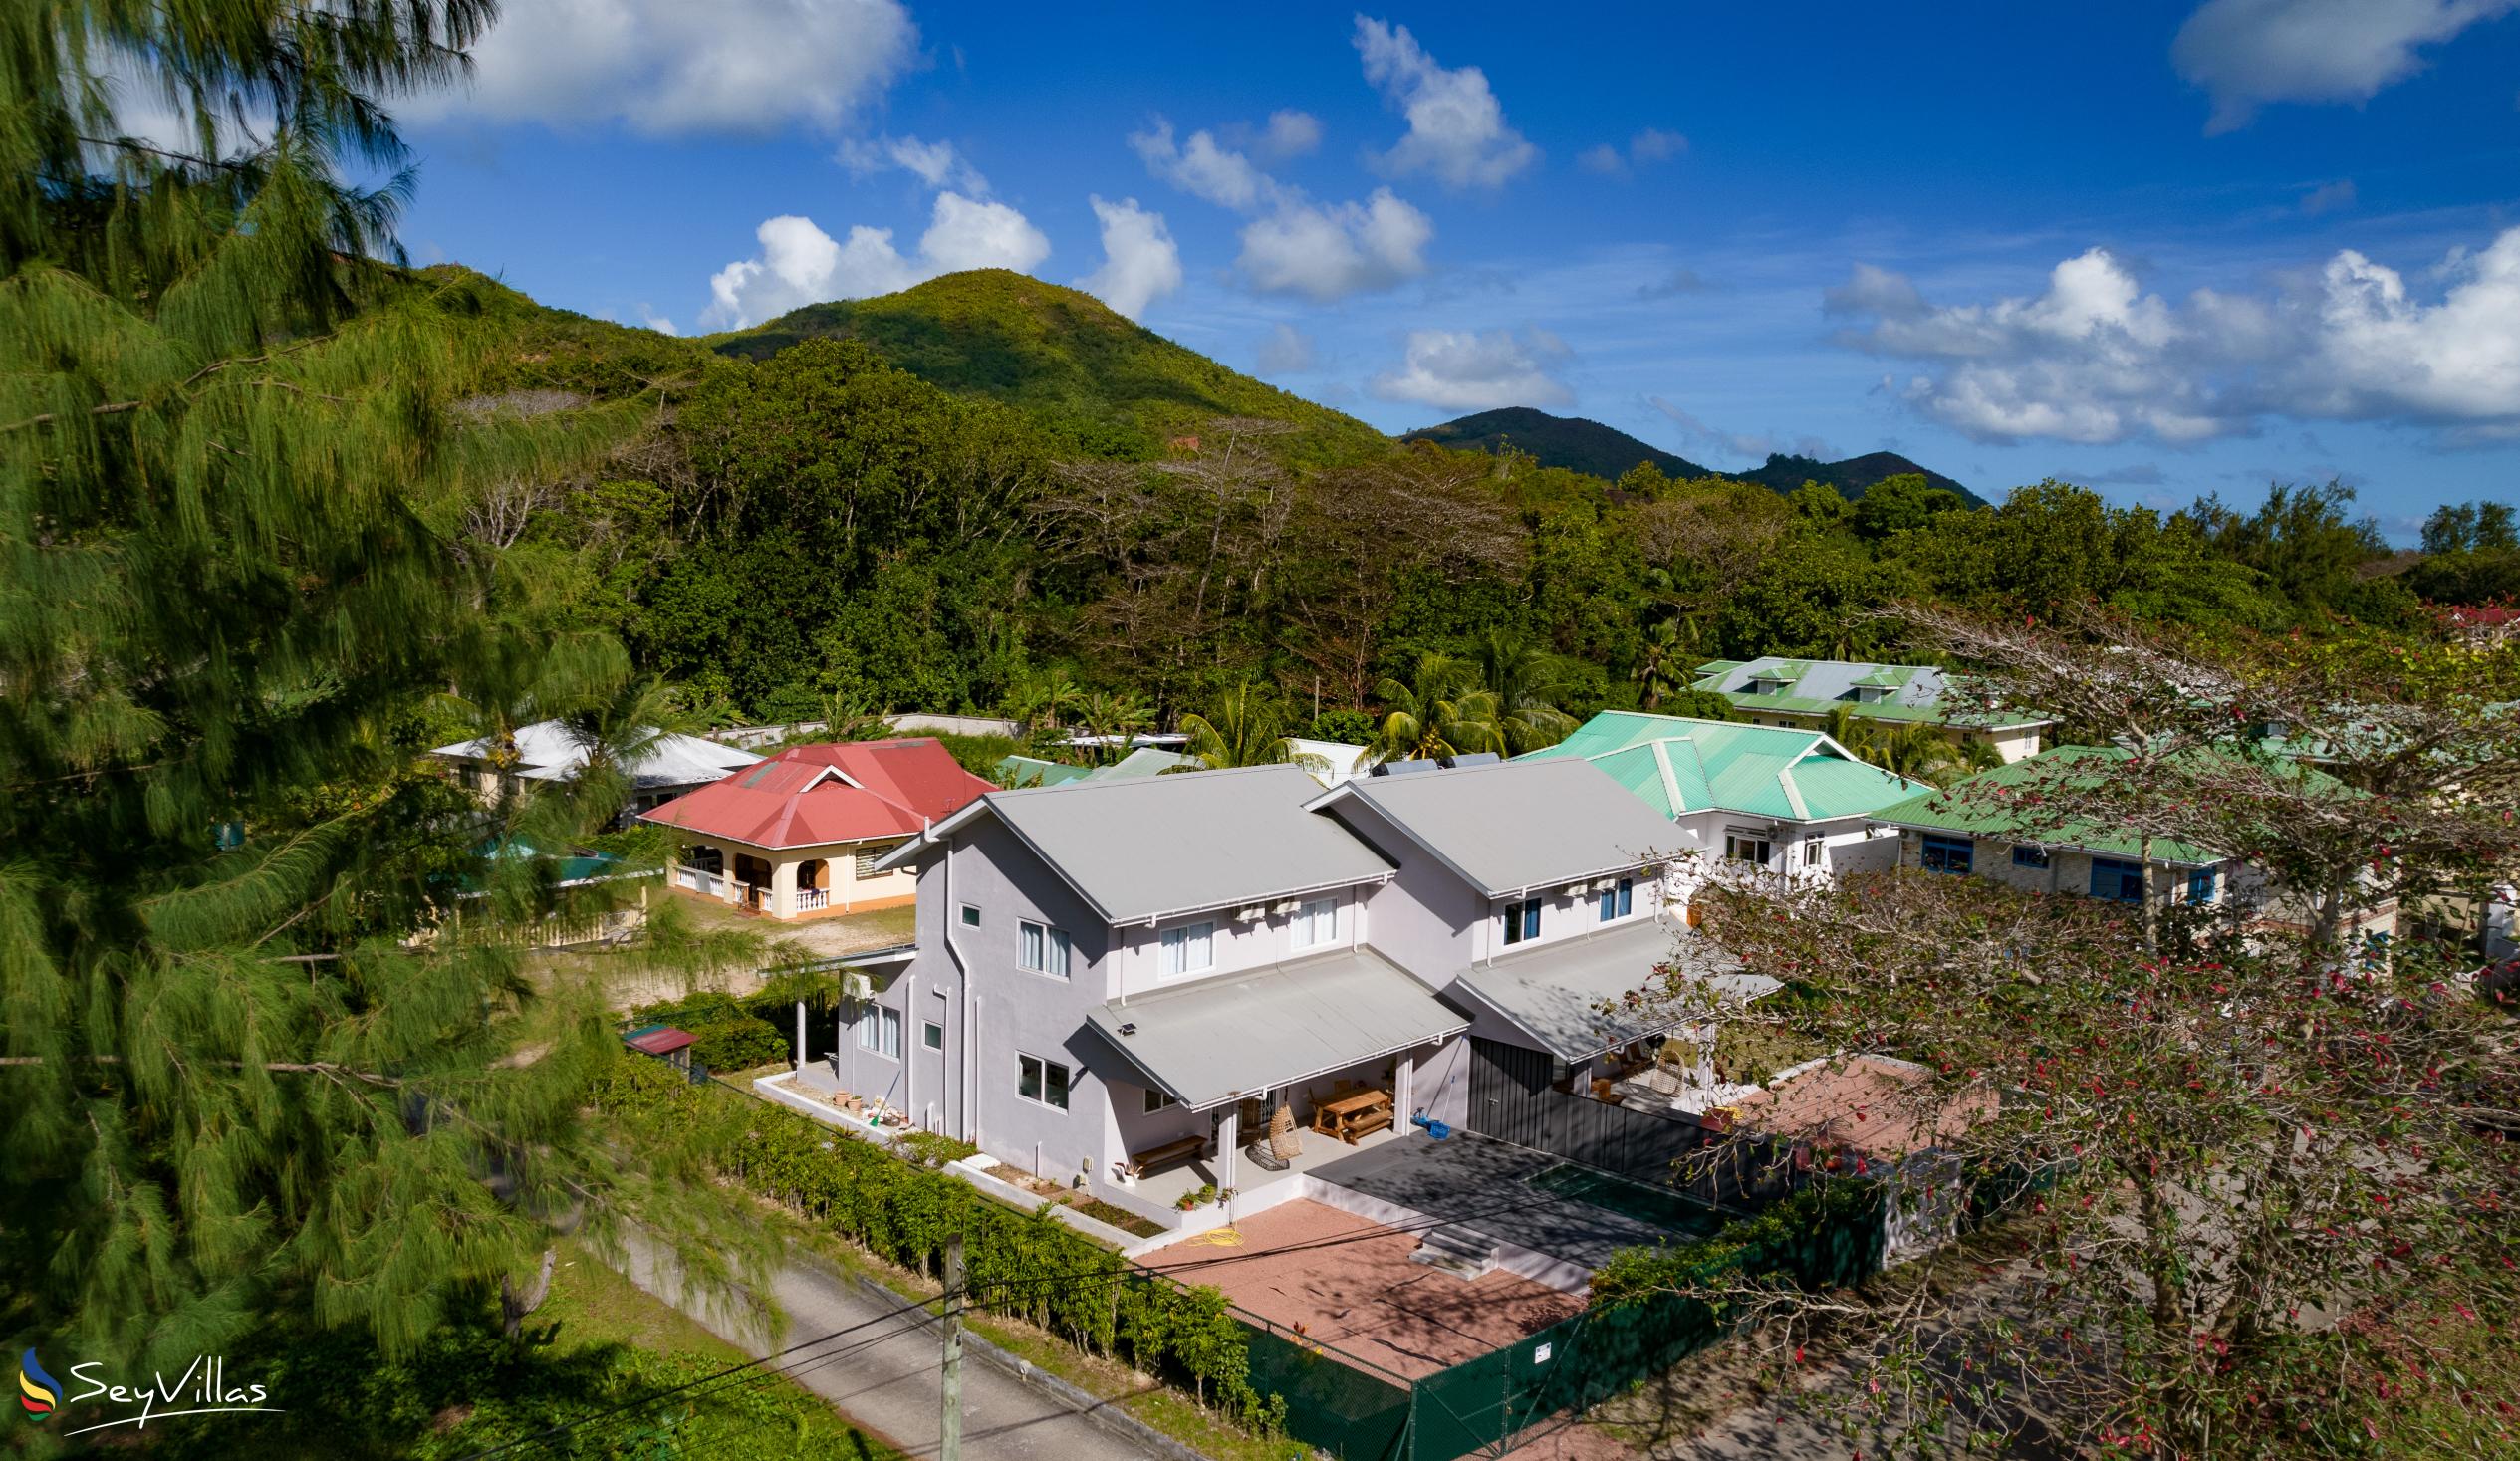 Foto 15: Maison Marie-Jeanne - Extérieur - Praslin (Seychelles)